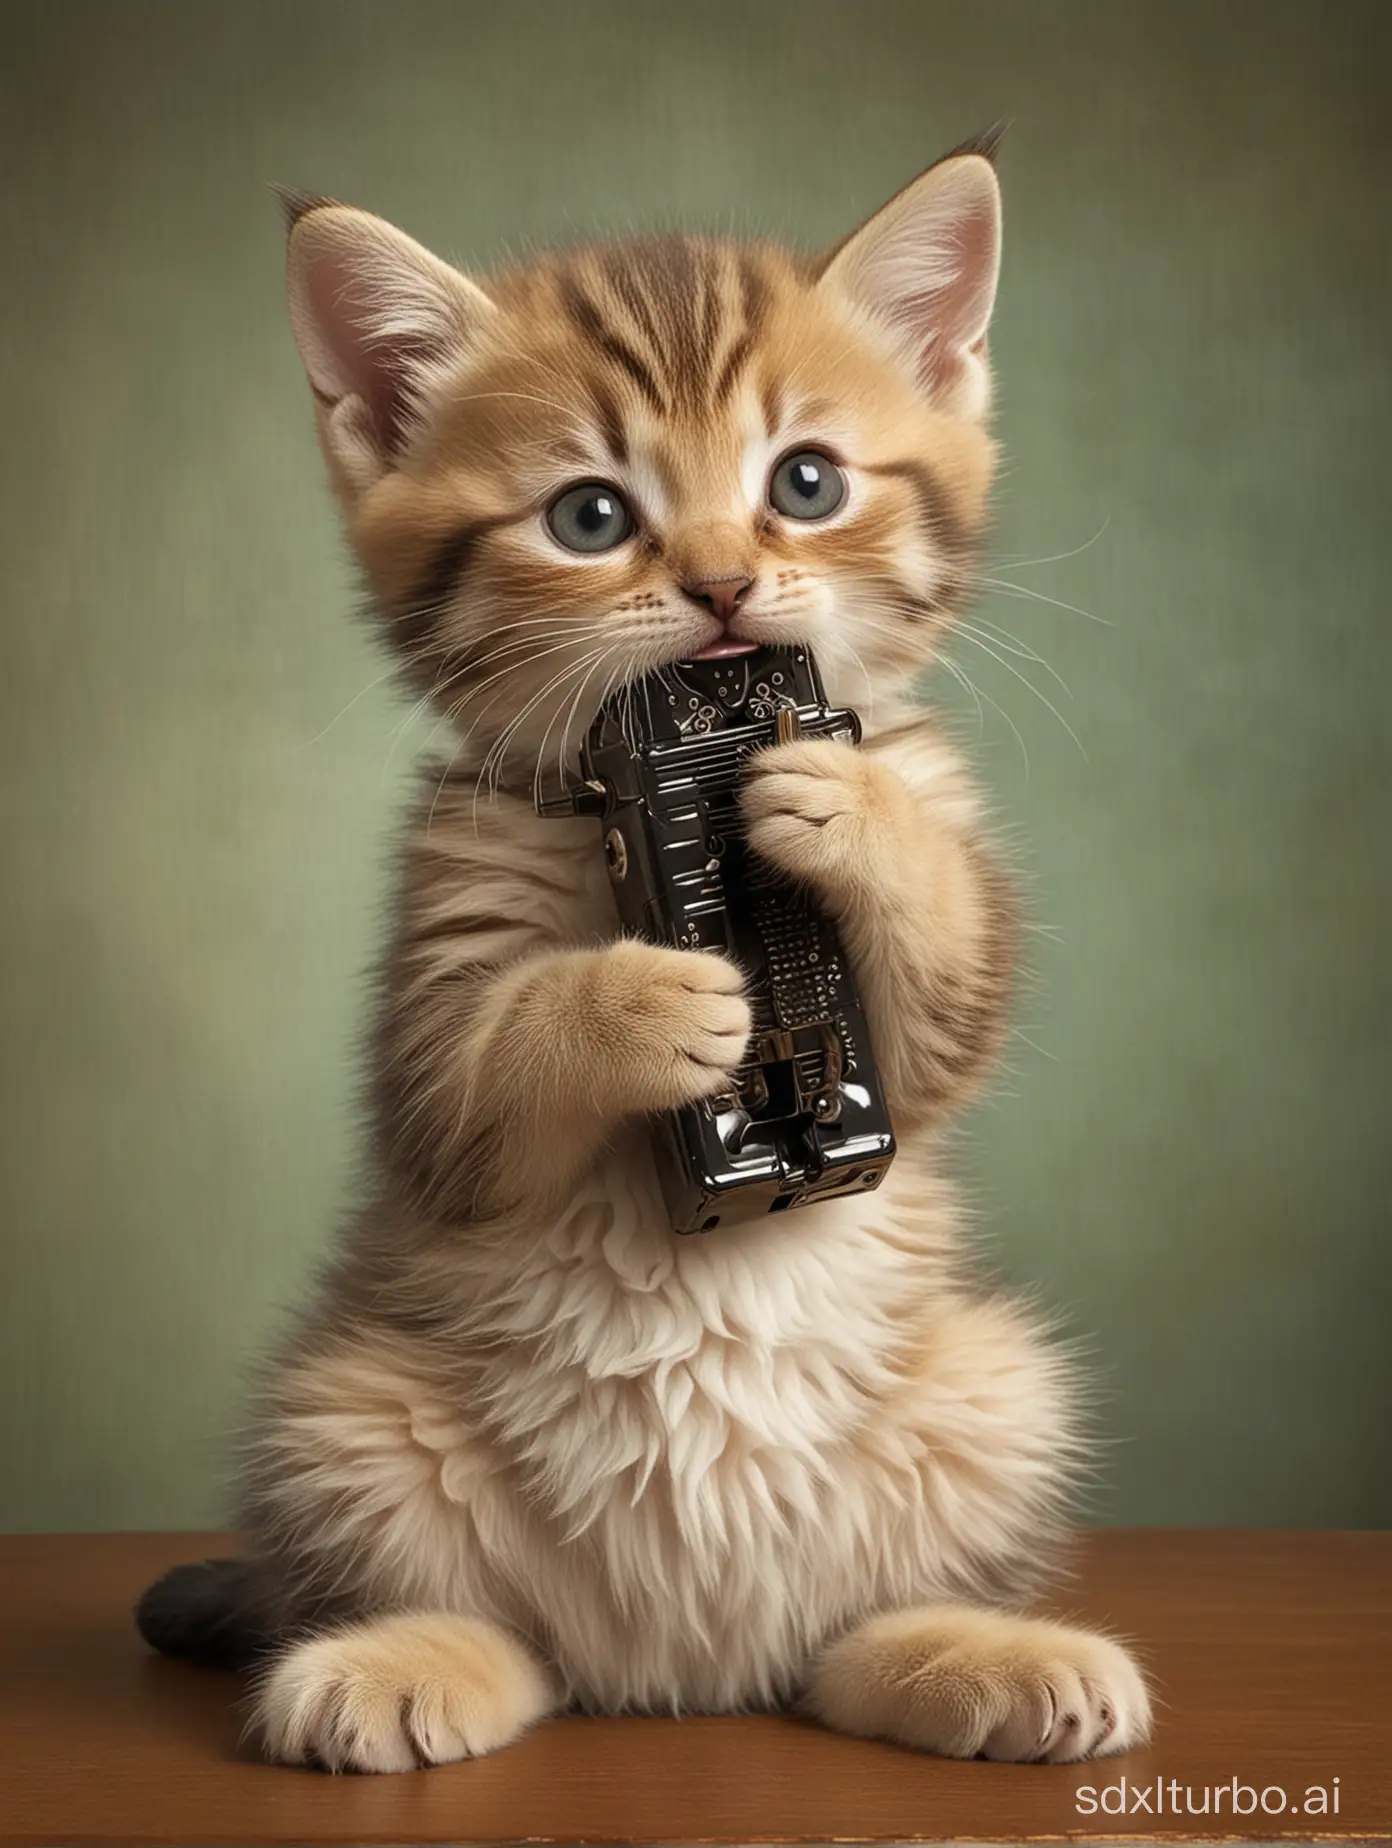 ANTHROPOMORPHIC KITTEN playing harmonica